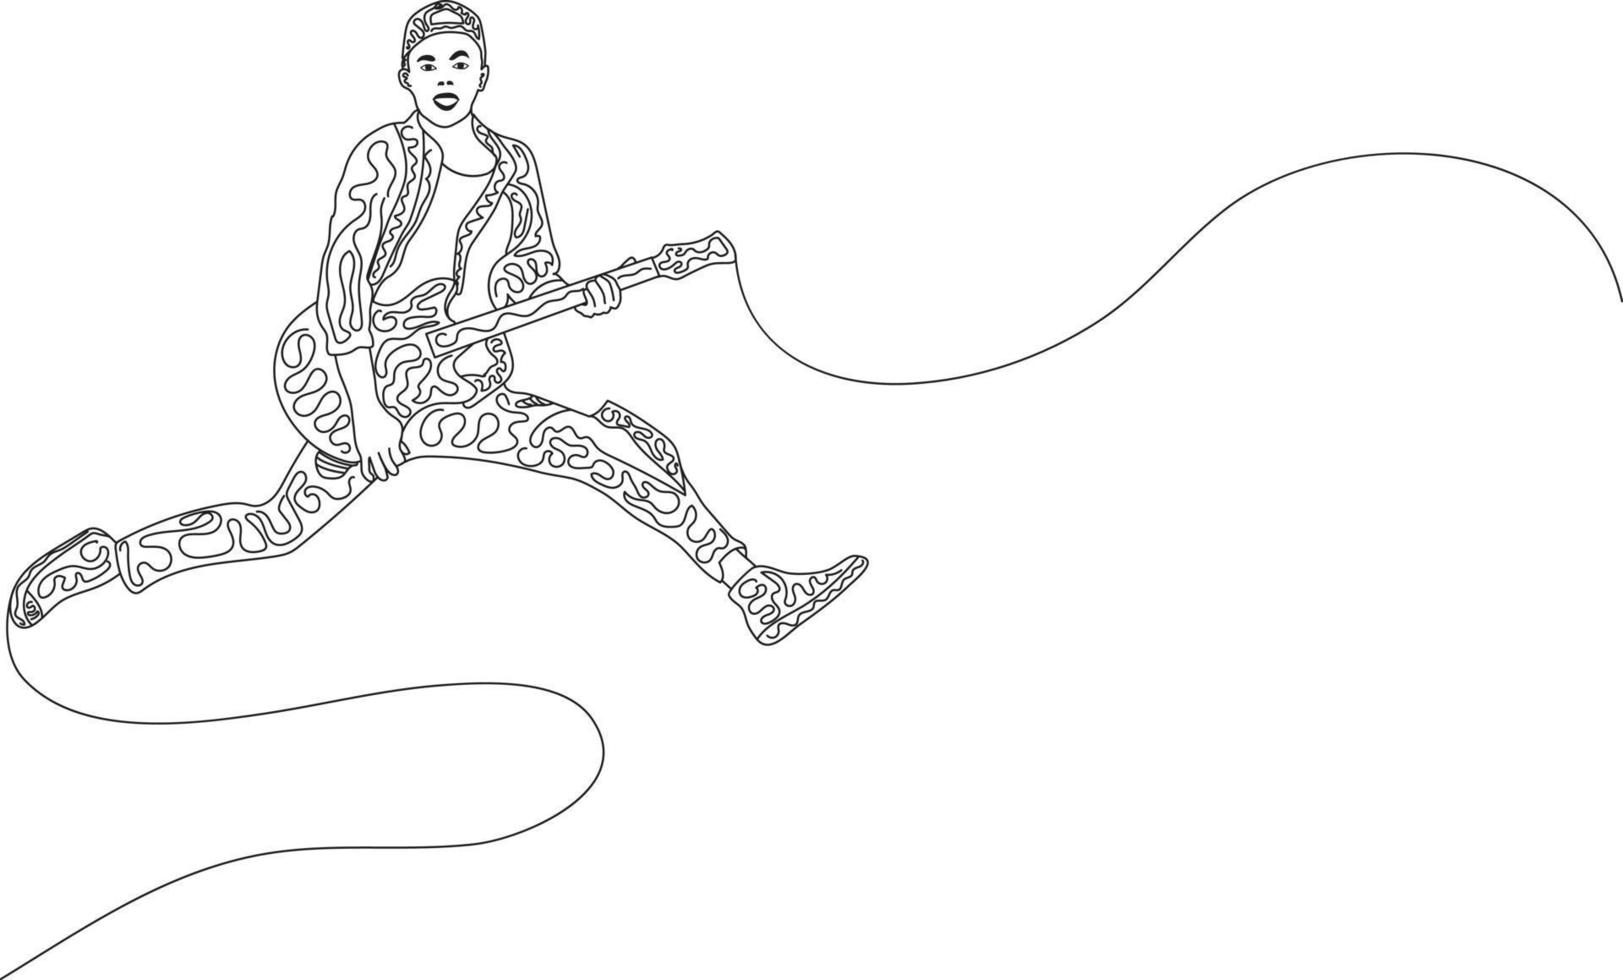 single line art doodle art bild av energisk ung gitarrist som hoppar på scenen och spelar gitarr. vektor illustration av en kontinuerlig linje ritning design. vektor illustration av doodle art design.